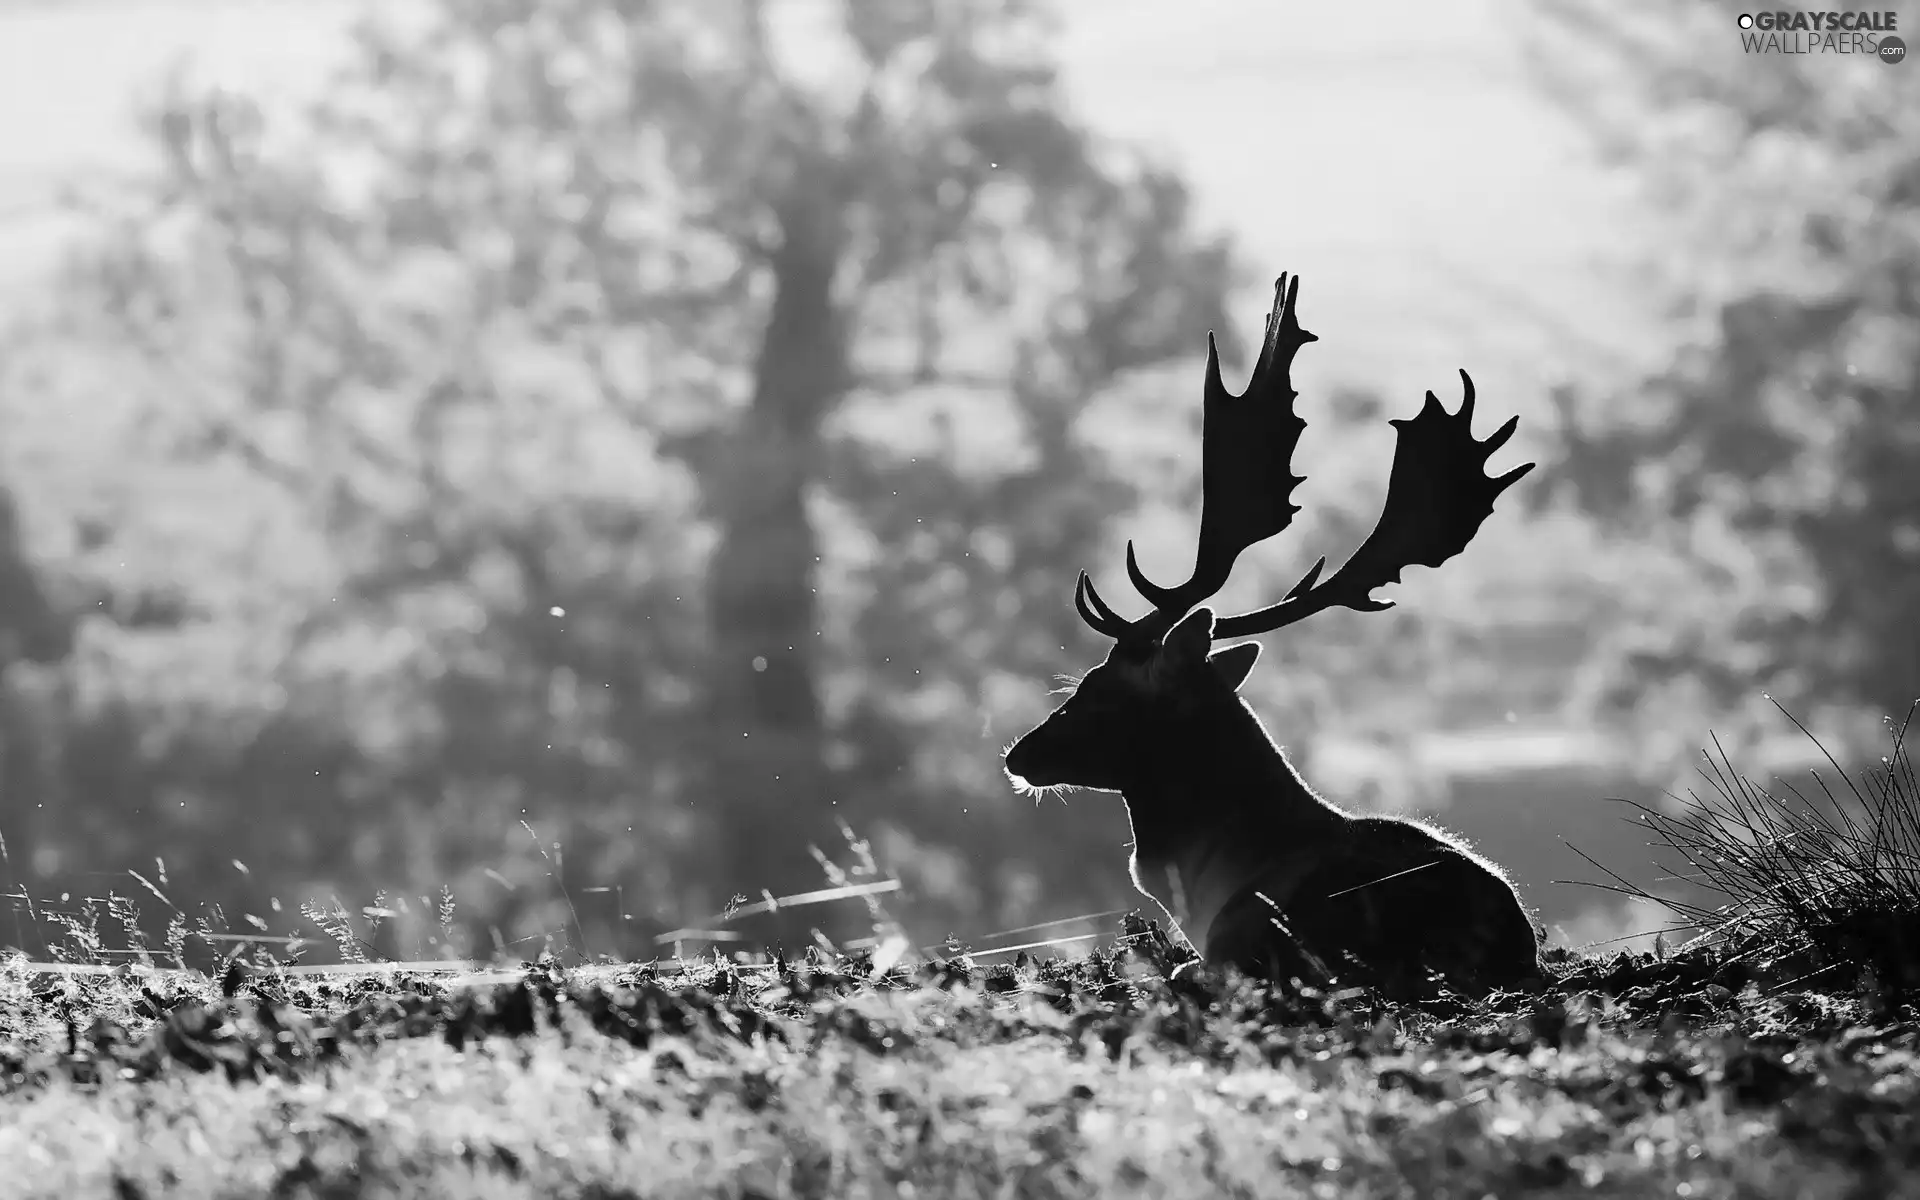 deer, antlers